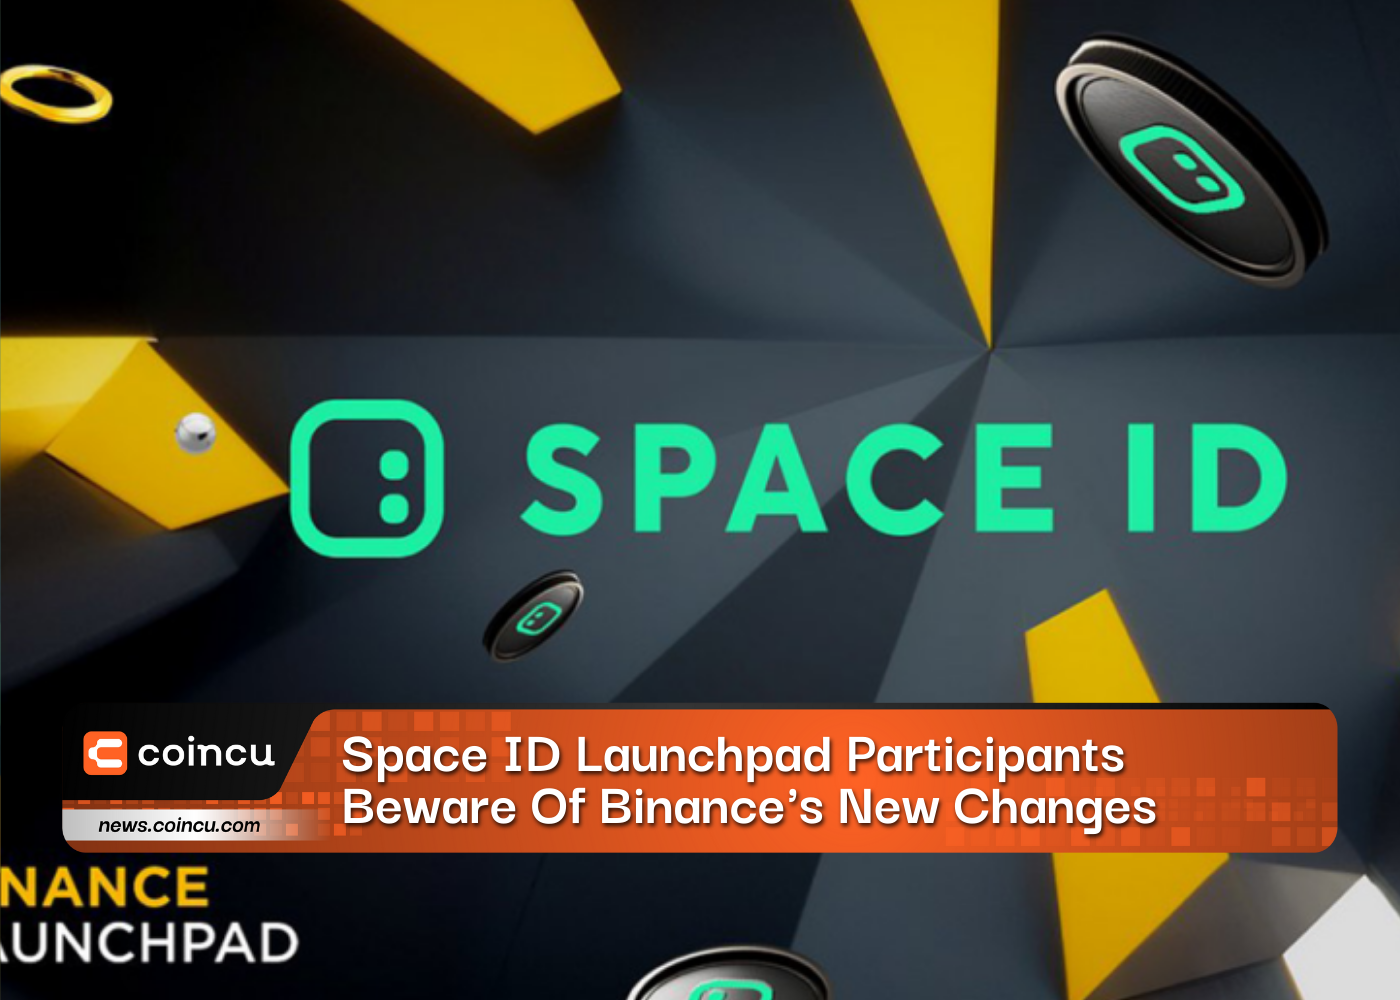 Teilnehmer des Space ID Launchpad sollten sich vor den neuen Änderungen von Binance hüten